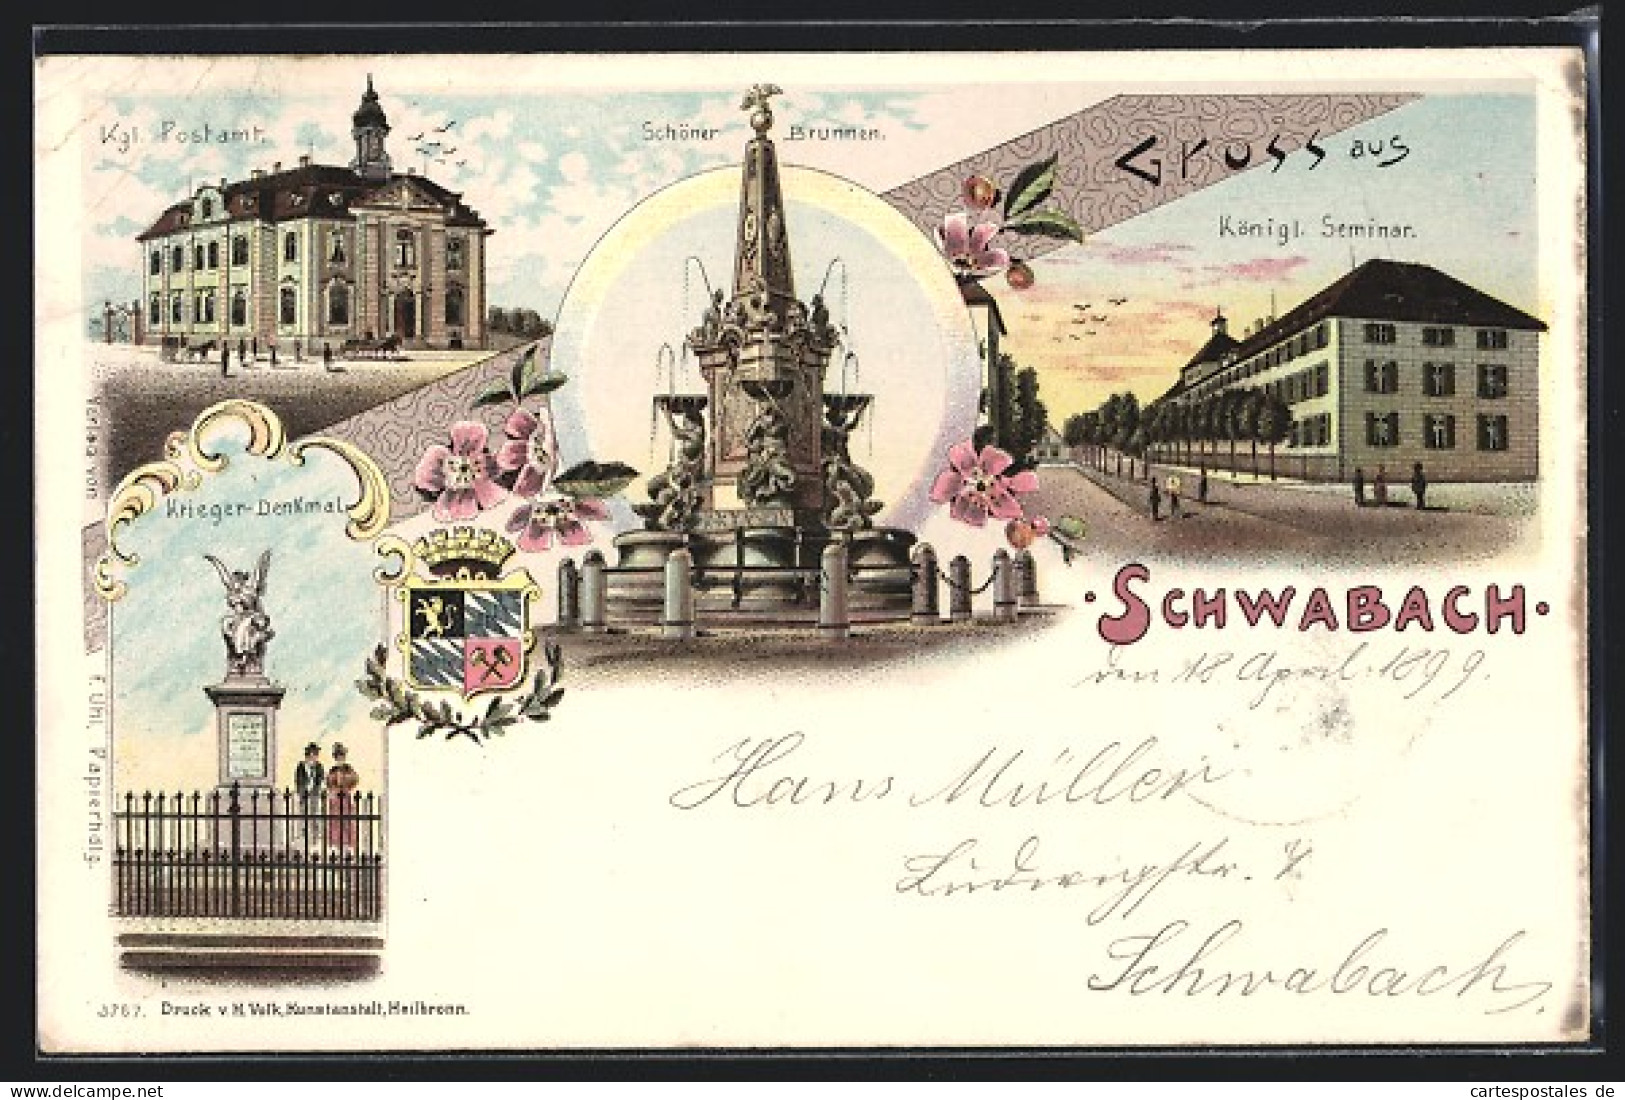 Lithographie Schwabach, Kgl. Postamt, Schöner Brunnen, Königl. Seminar, Krieger-Denkmal  - Schwabach